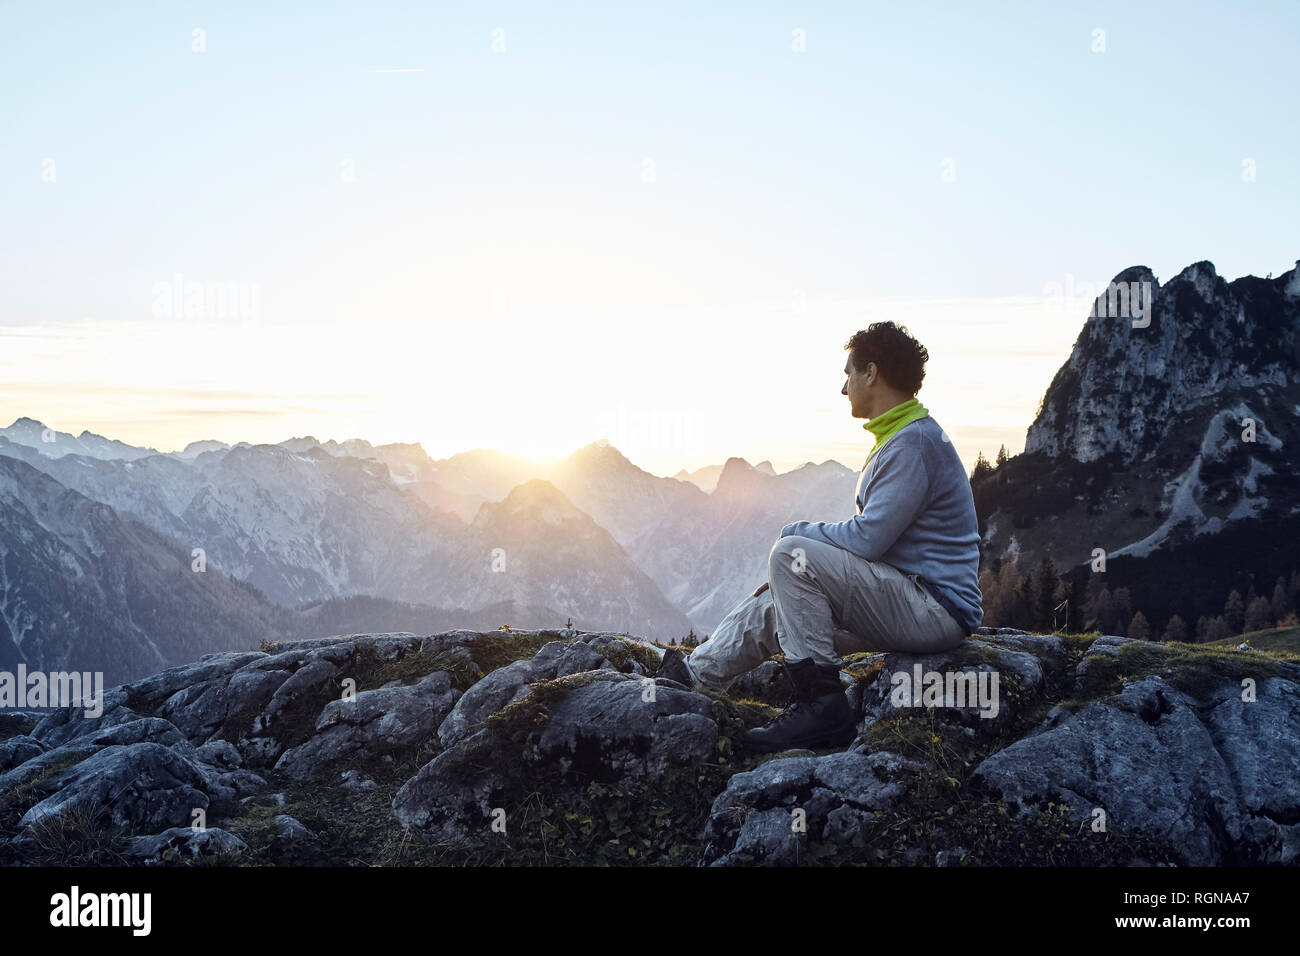 Autriche, Tyrol, Rofan, randonneur assis sur des roches au coucher du soleil Banque D'Images